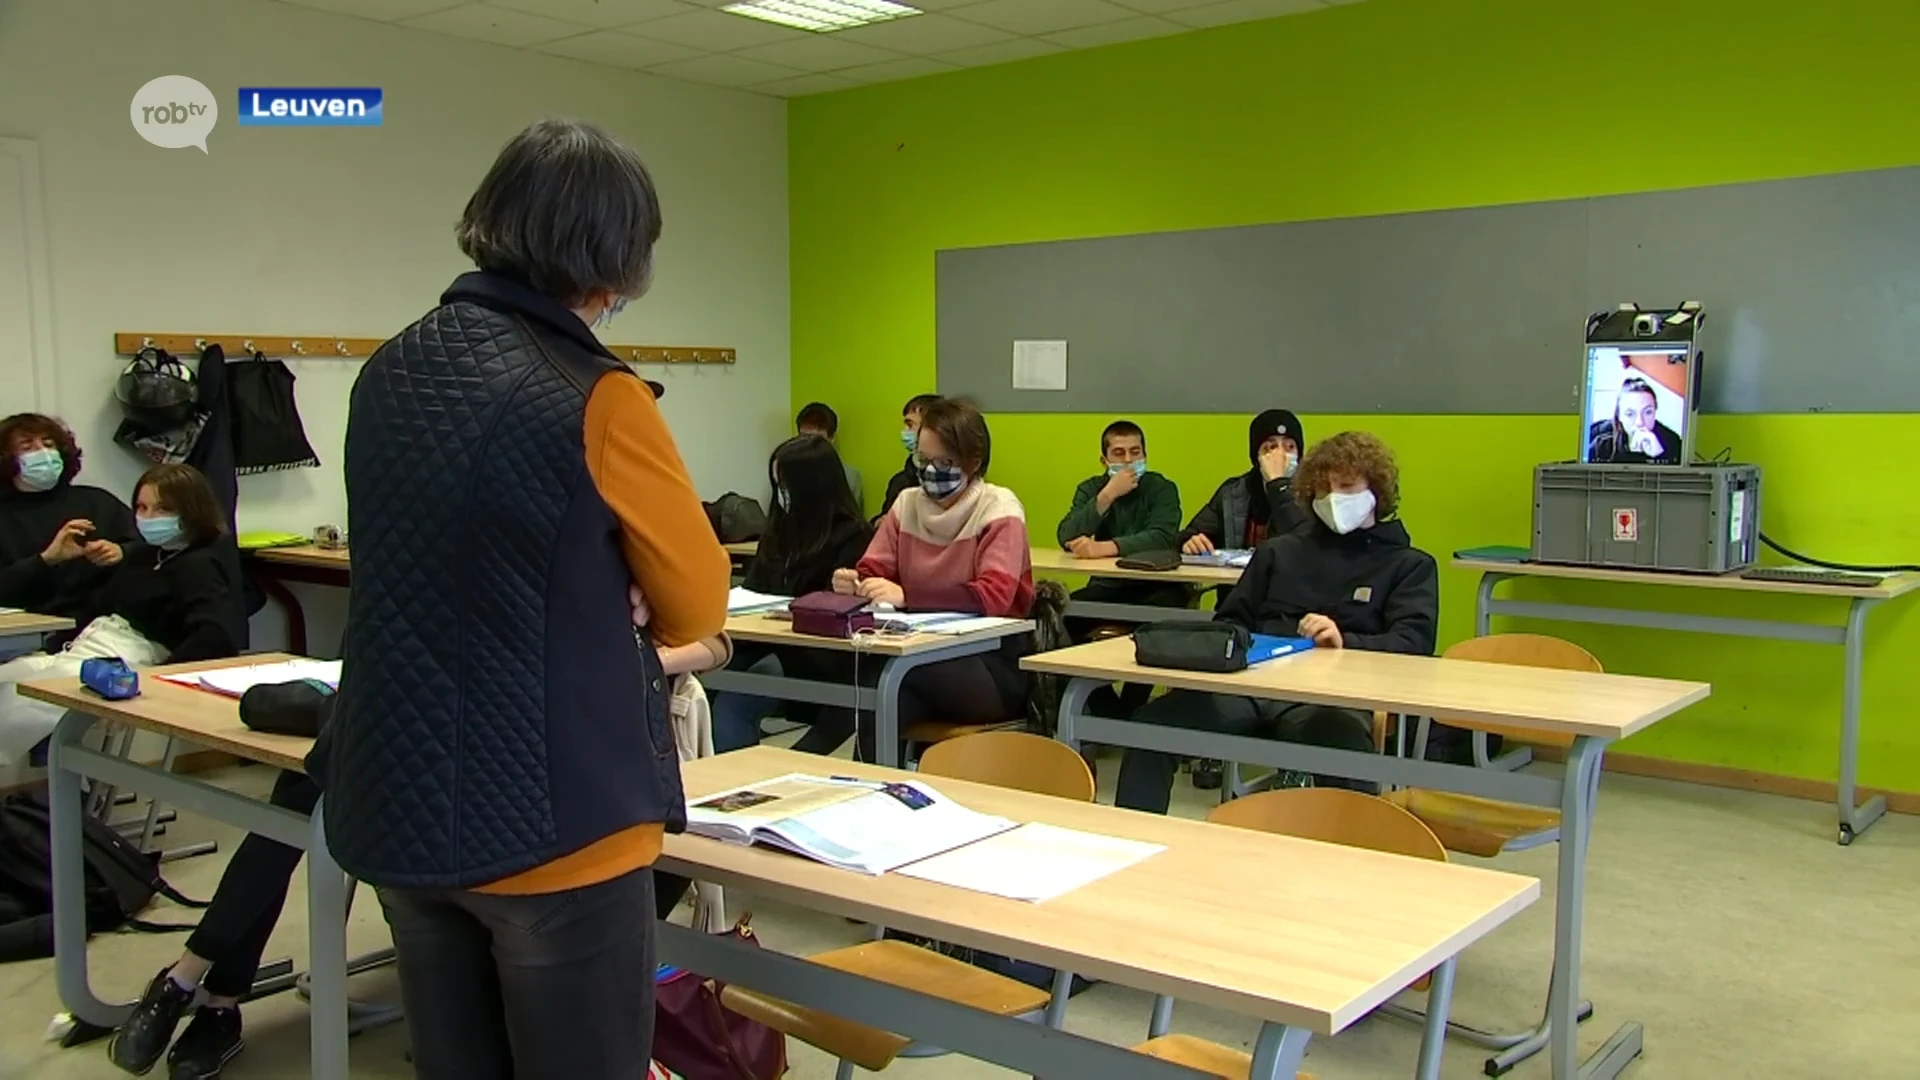 95 procent krijgt eerste of tweede voorkeursschool in Leuven na aanmelden via digitaal systeem